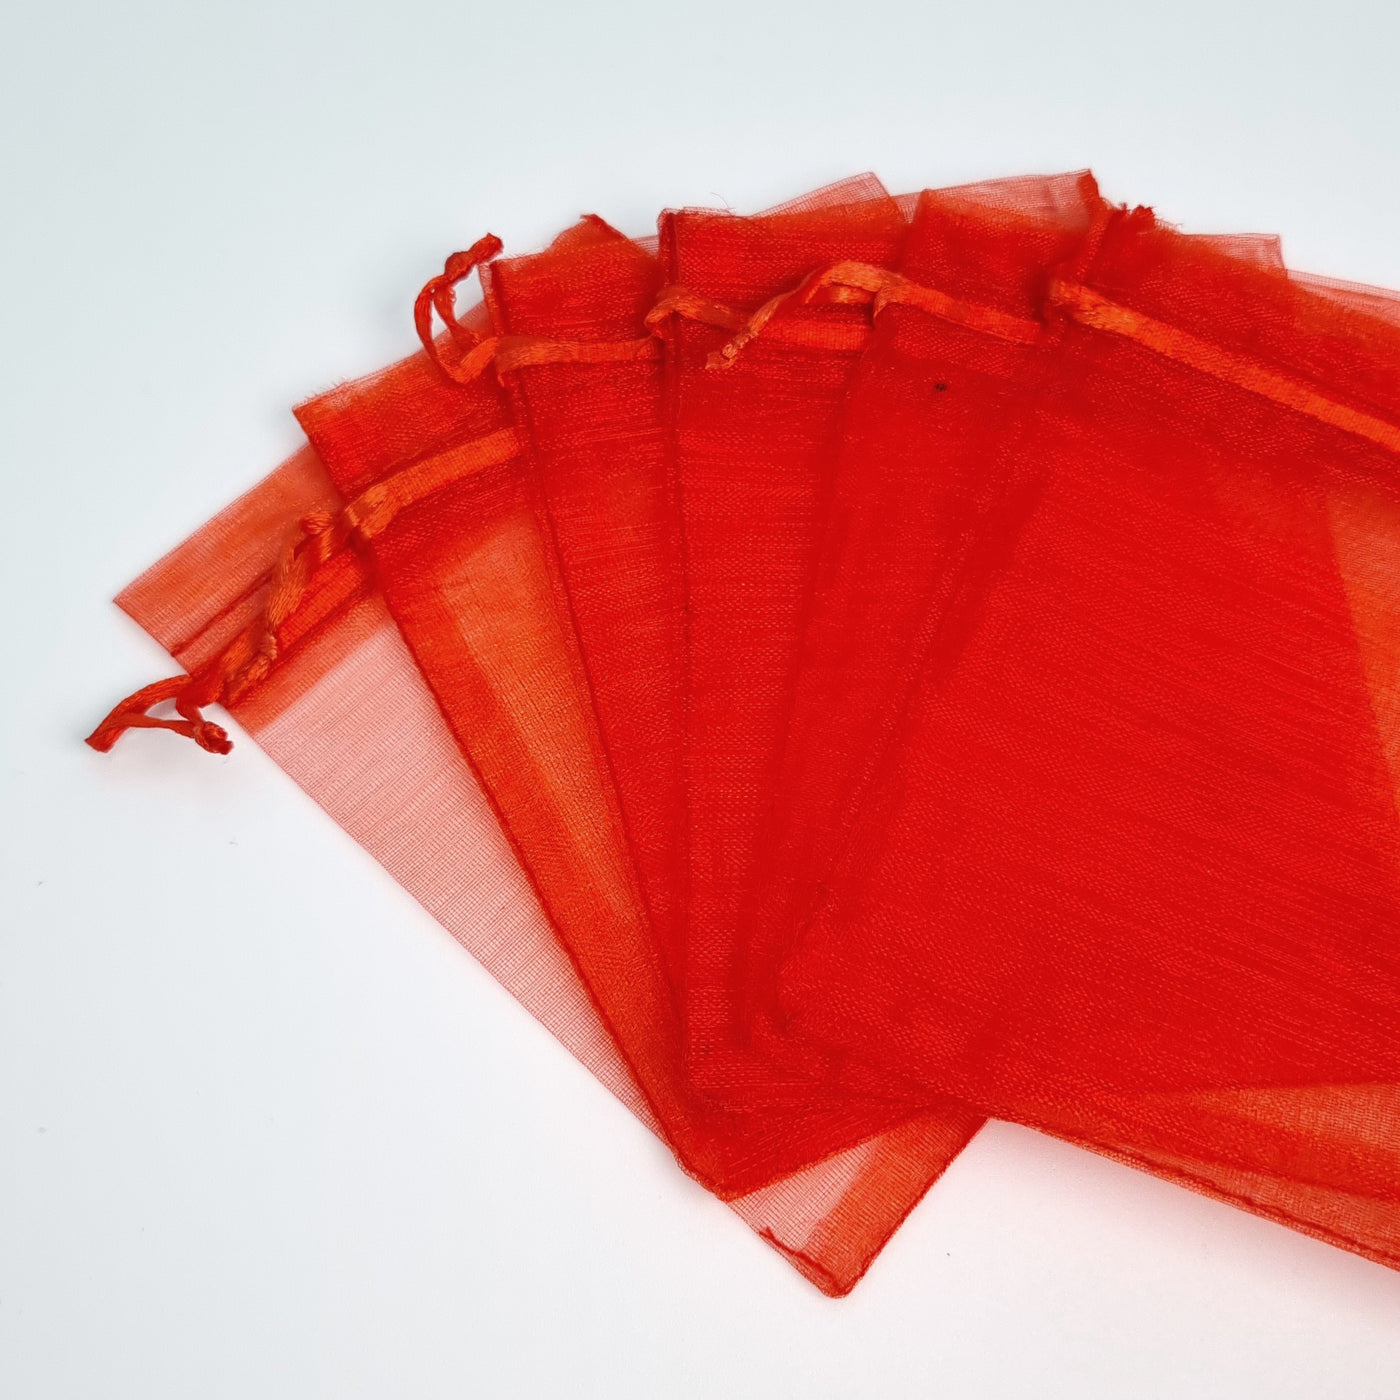 P. bolsas de organza color rojo 9*12 cm C170